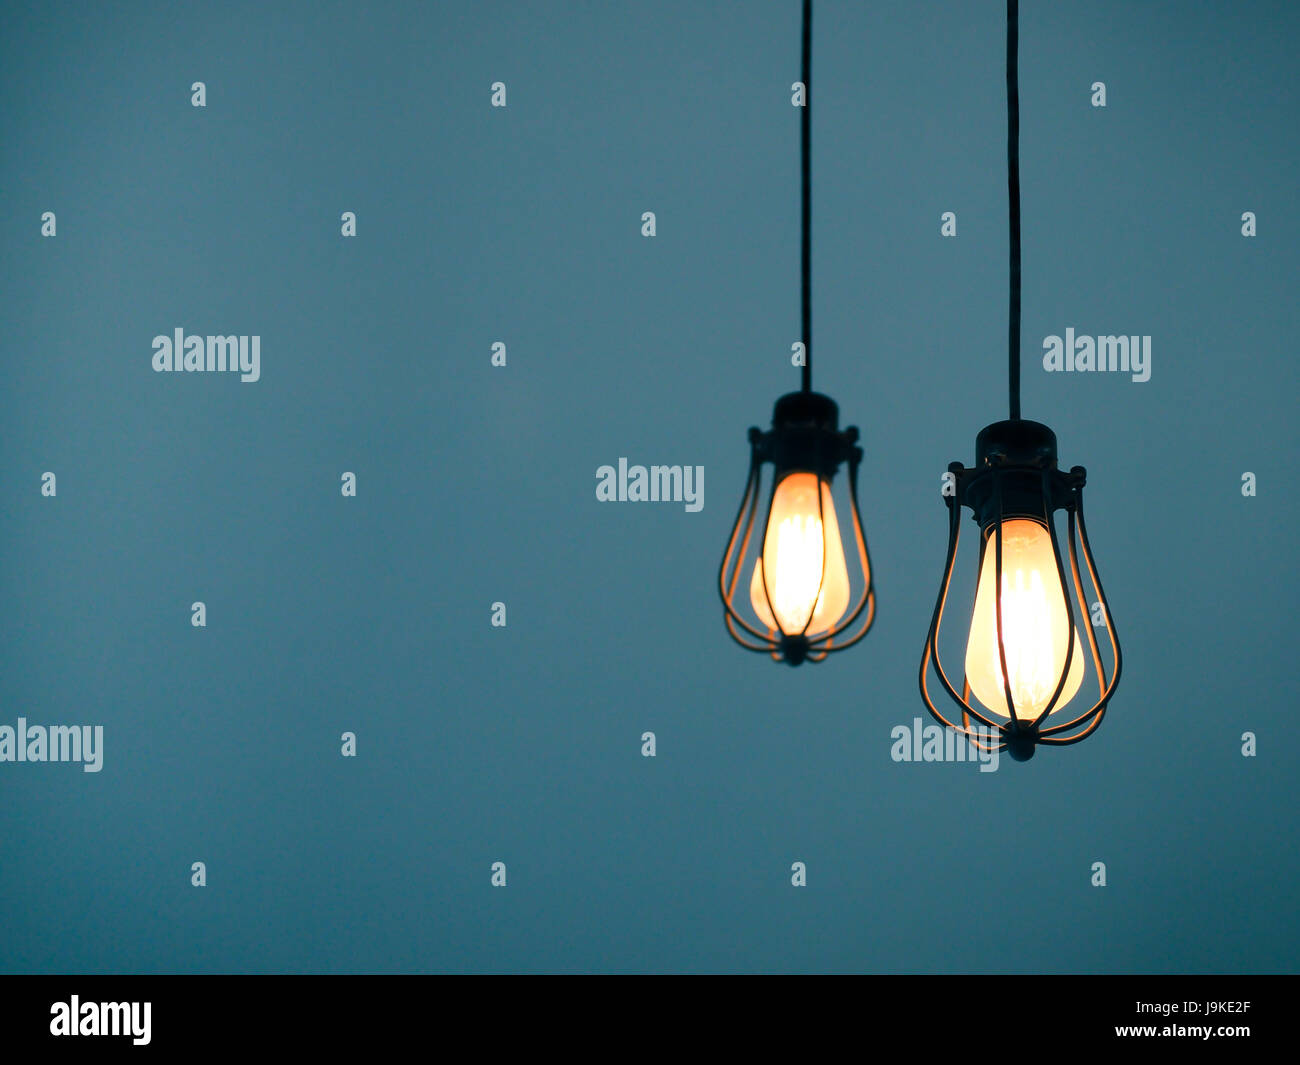 Las bombillas de luz incandescente de fondo plano con espacio de texto Foto de stock